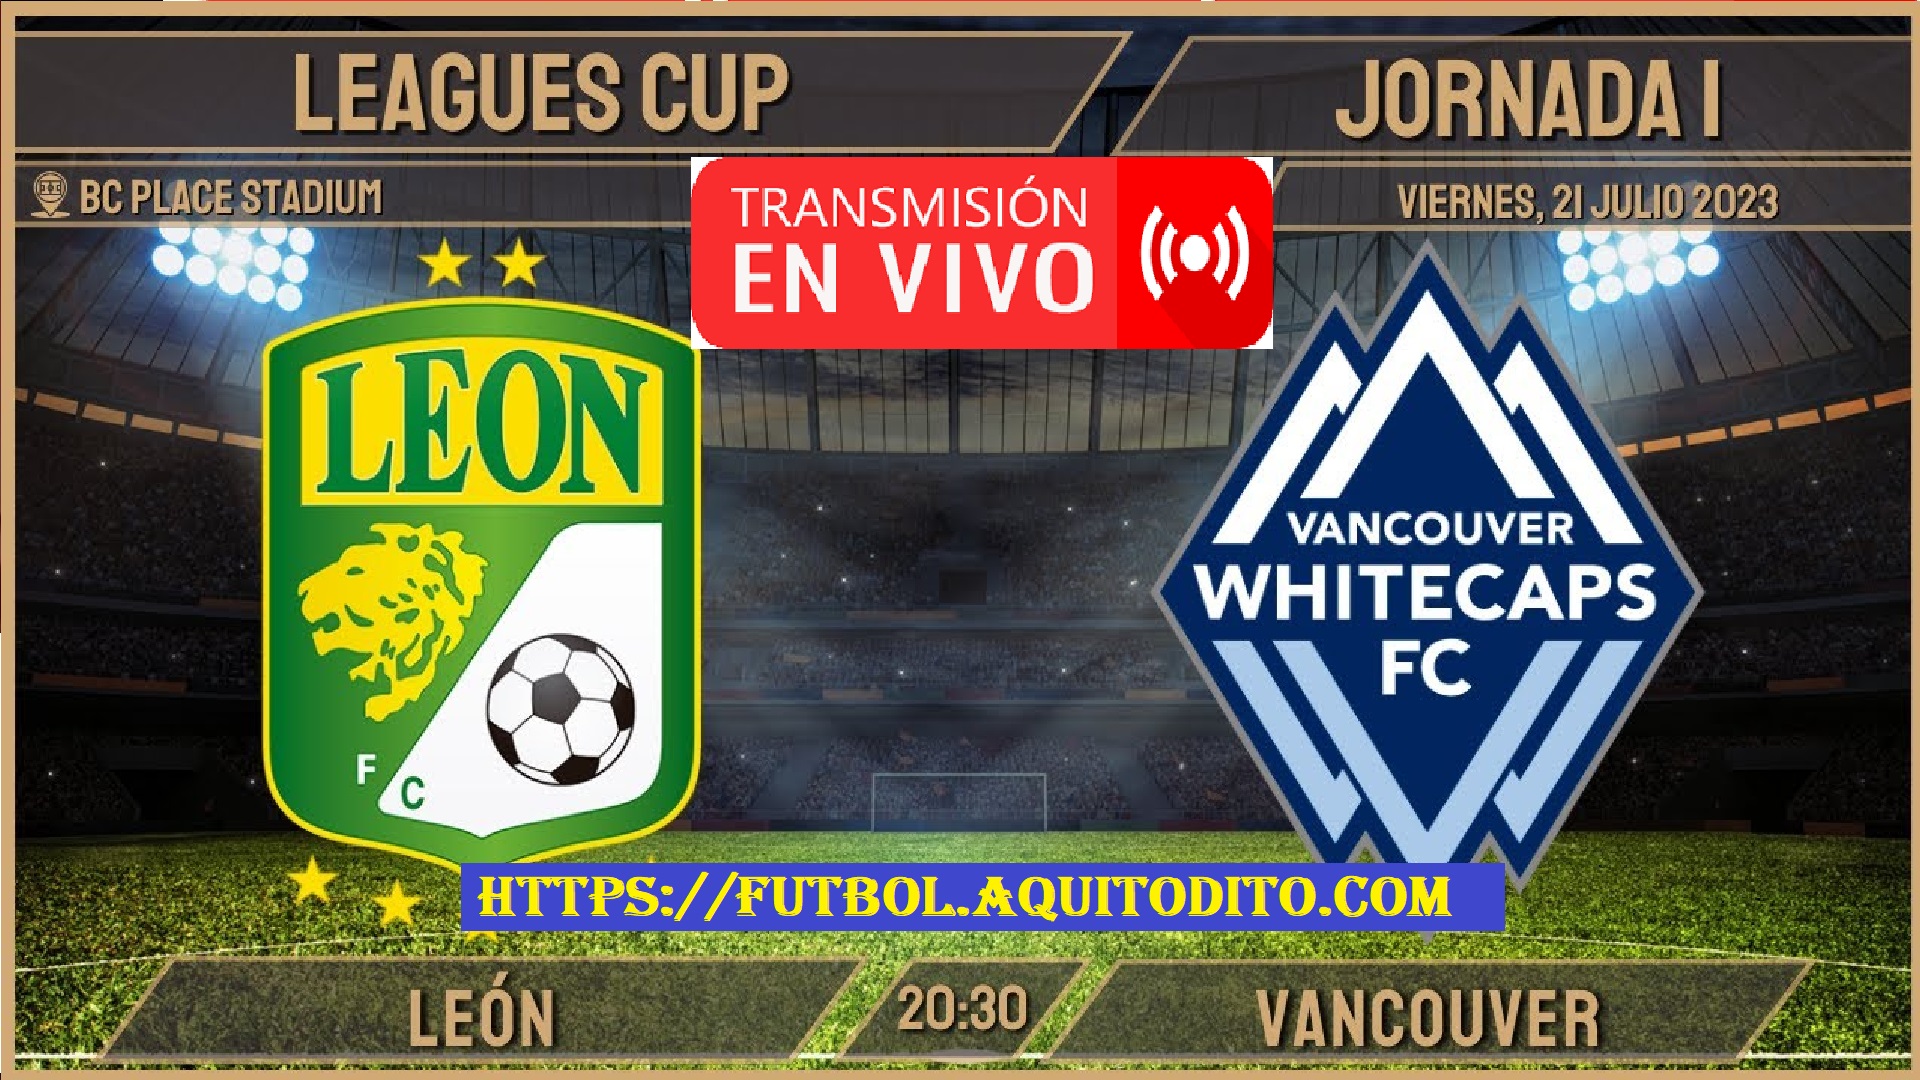 Leon FC vs. Whitecaps FC EN VIVO Leagues Cup 2023